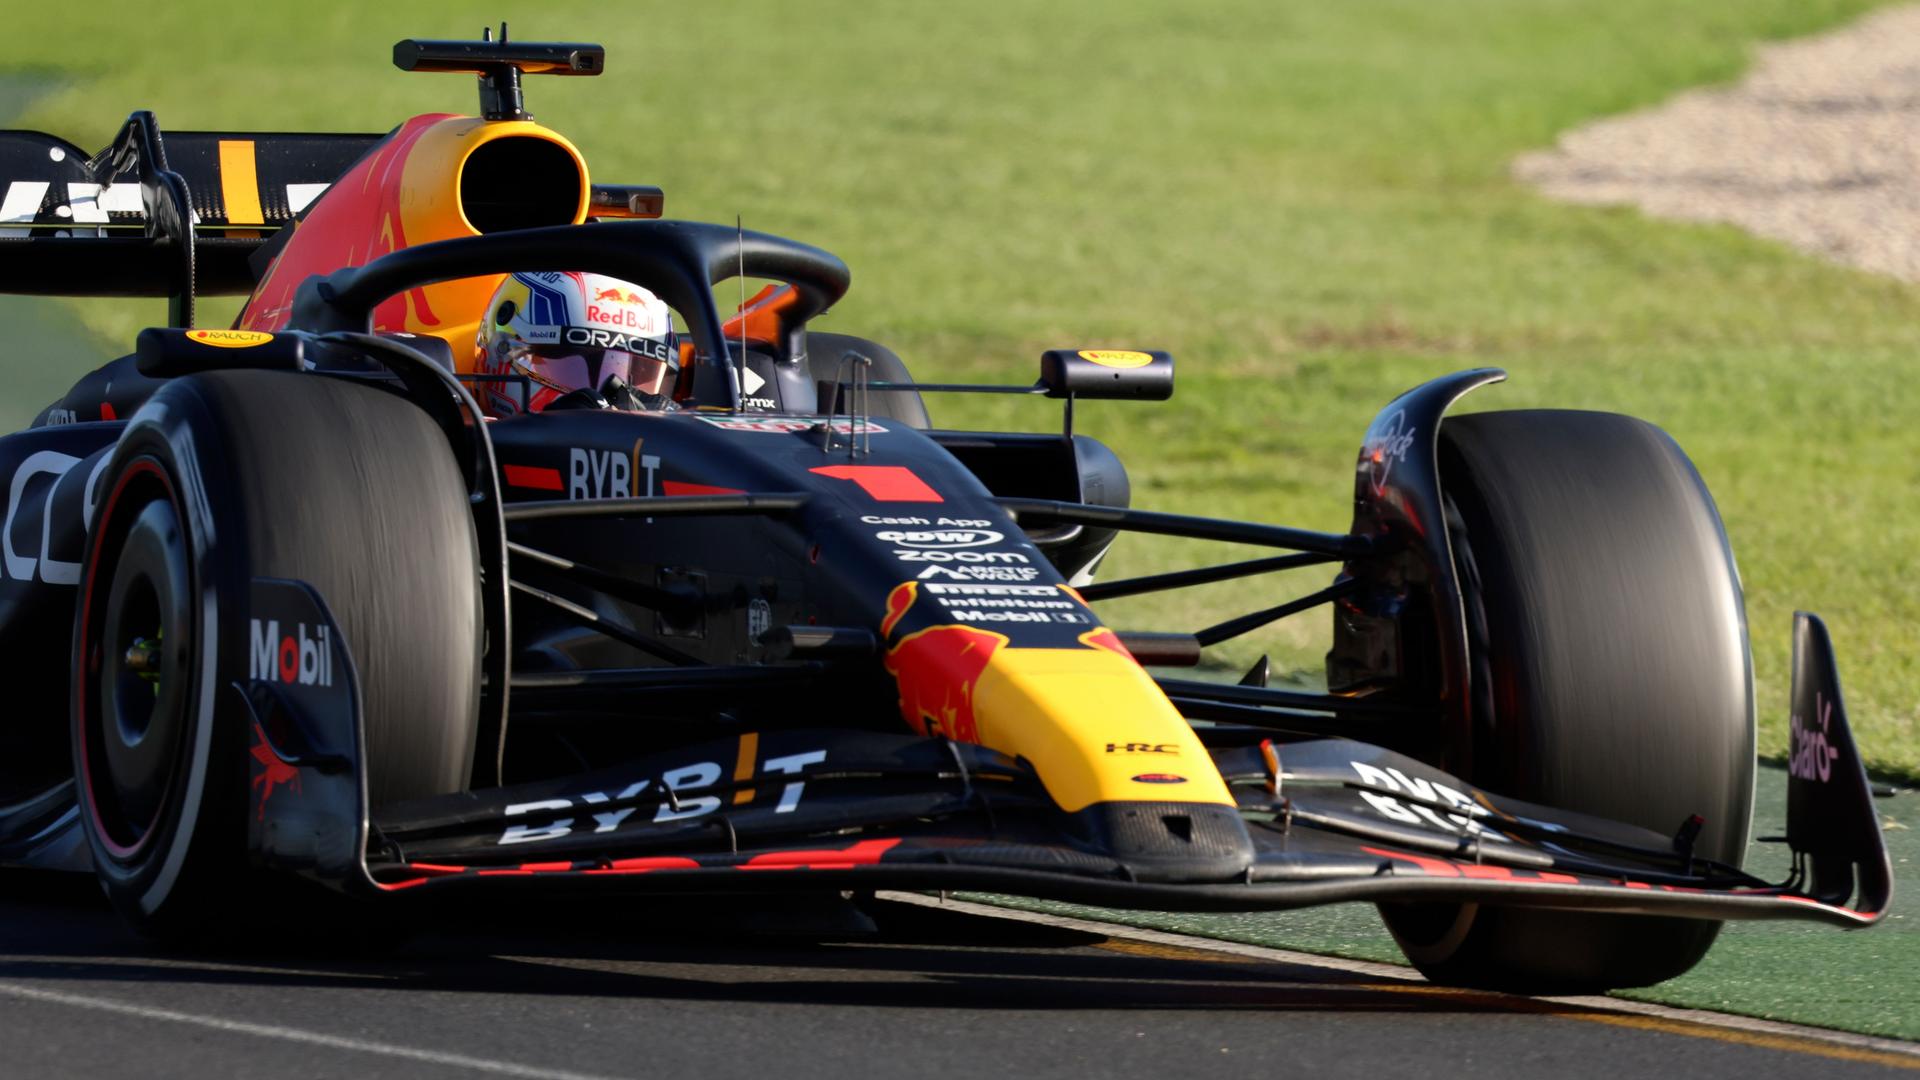 Der Renn-Fahrer Max Verstappen fährt in seinem Renn-Wagen.